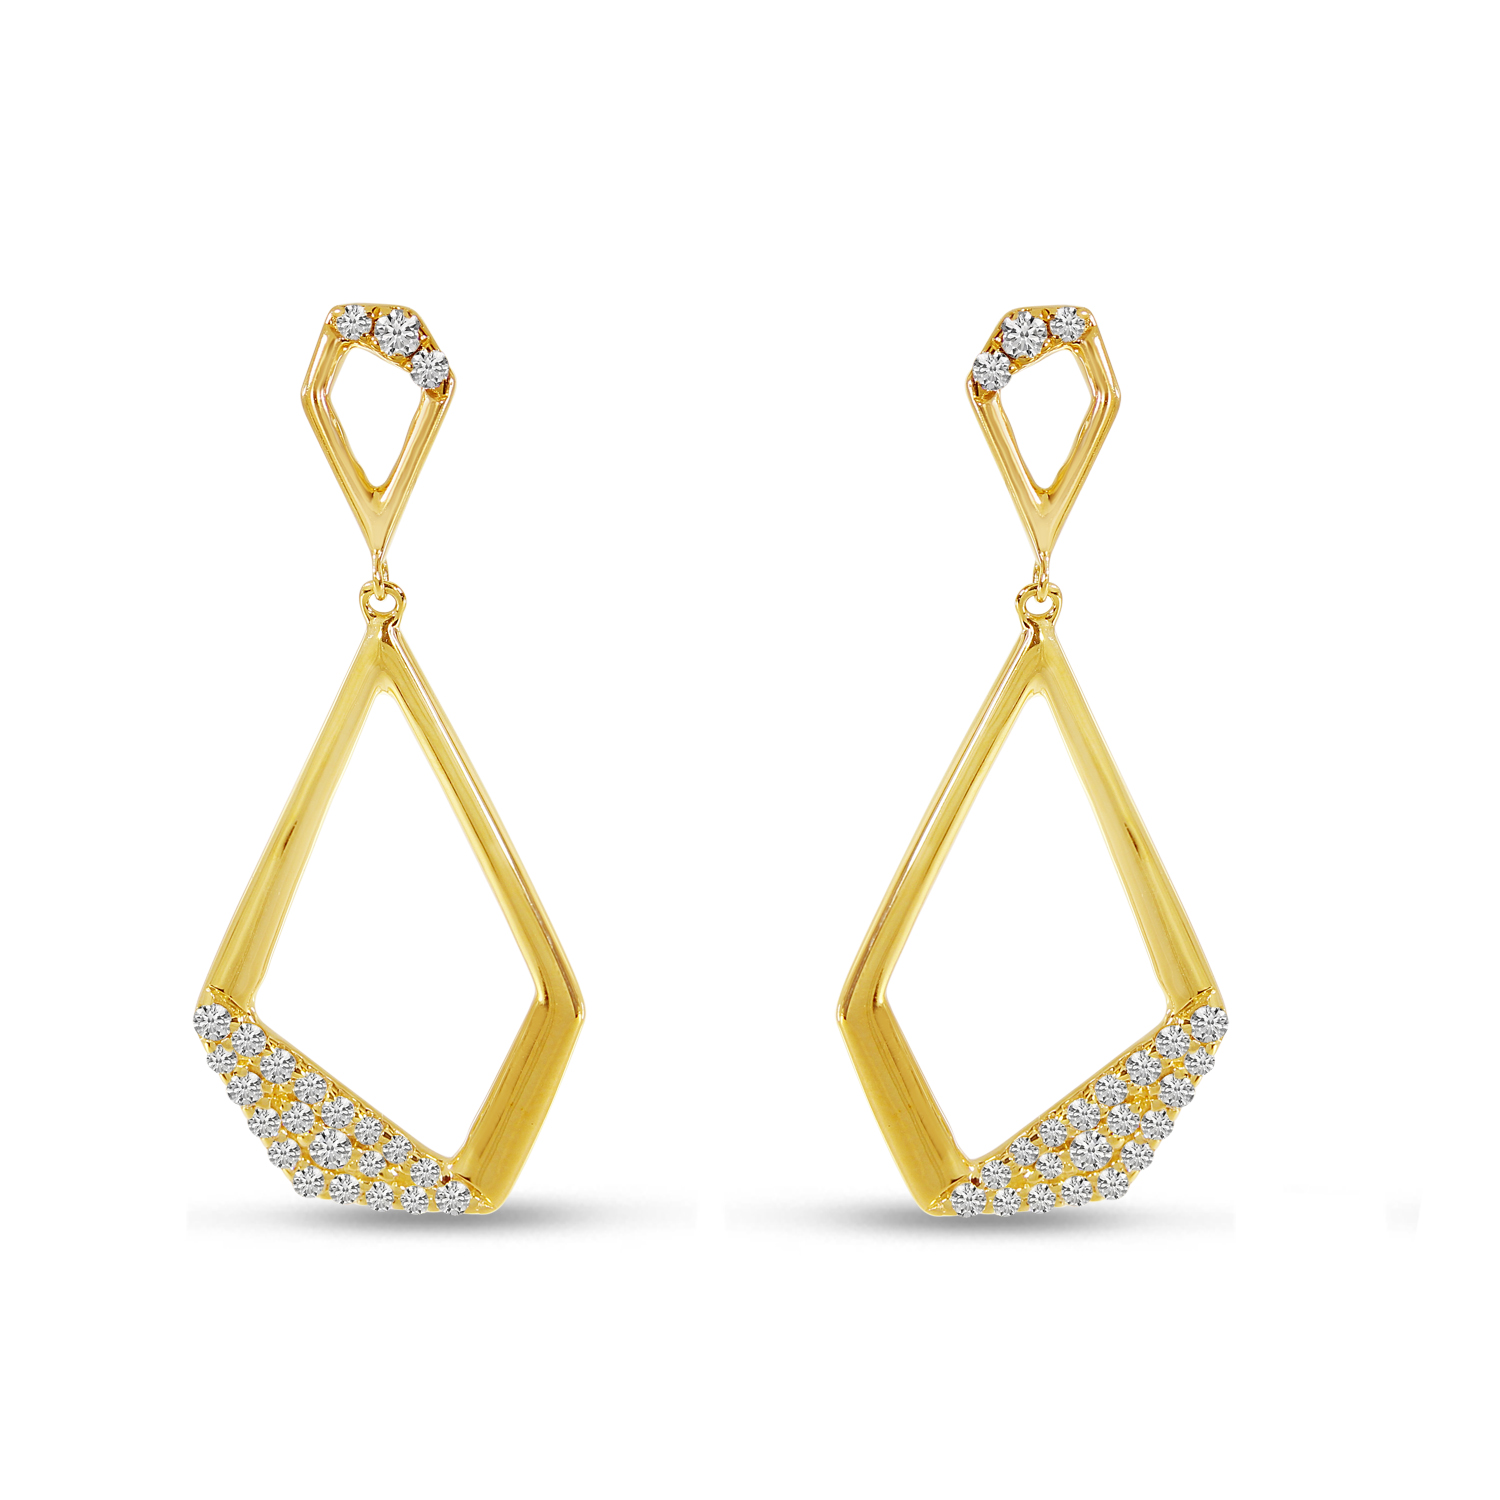 14k Solid Gold Geometric Dangle Stud Earrings for Women